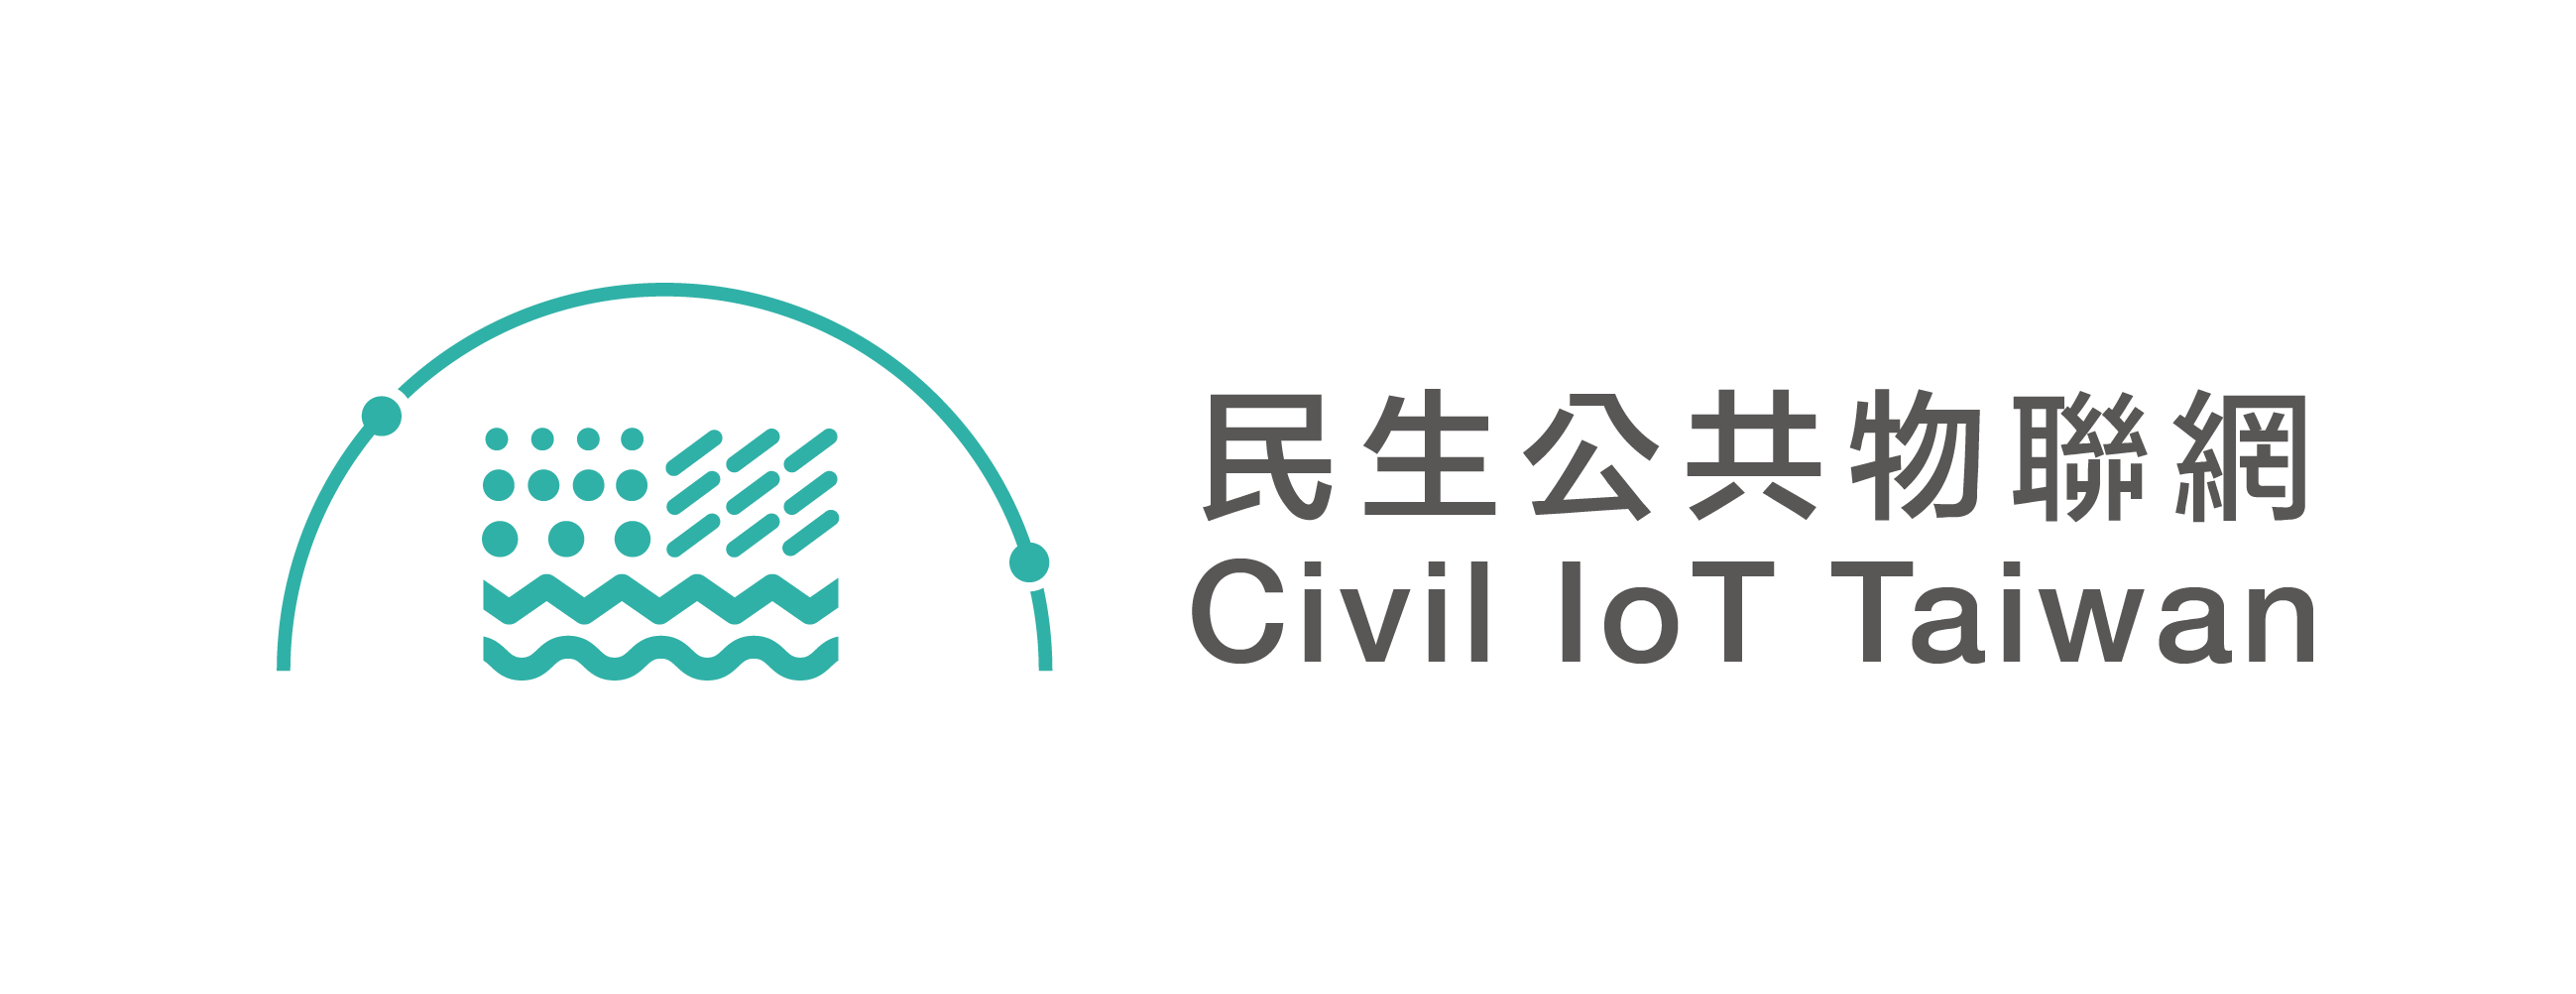 Civil IoT Taiwan